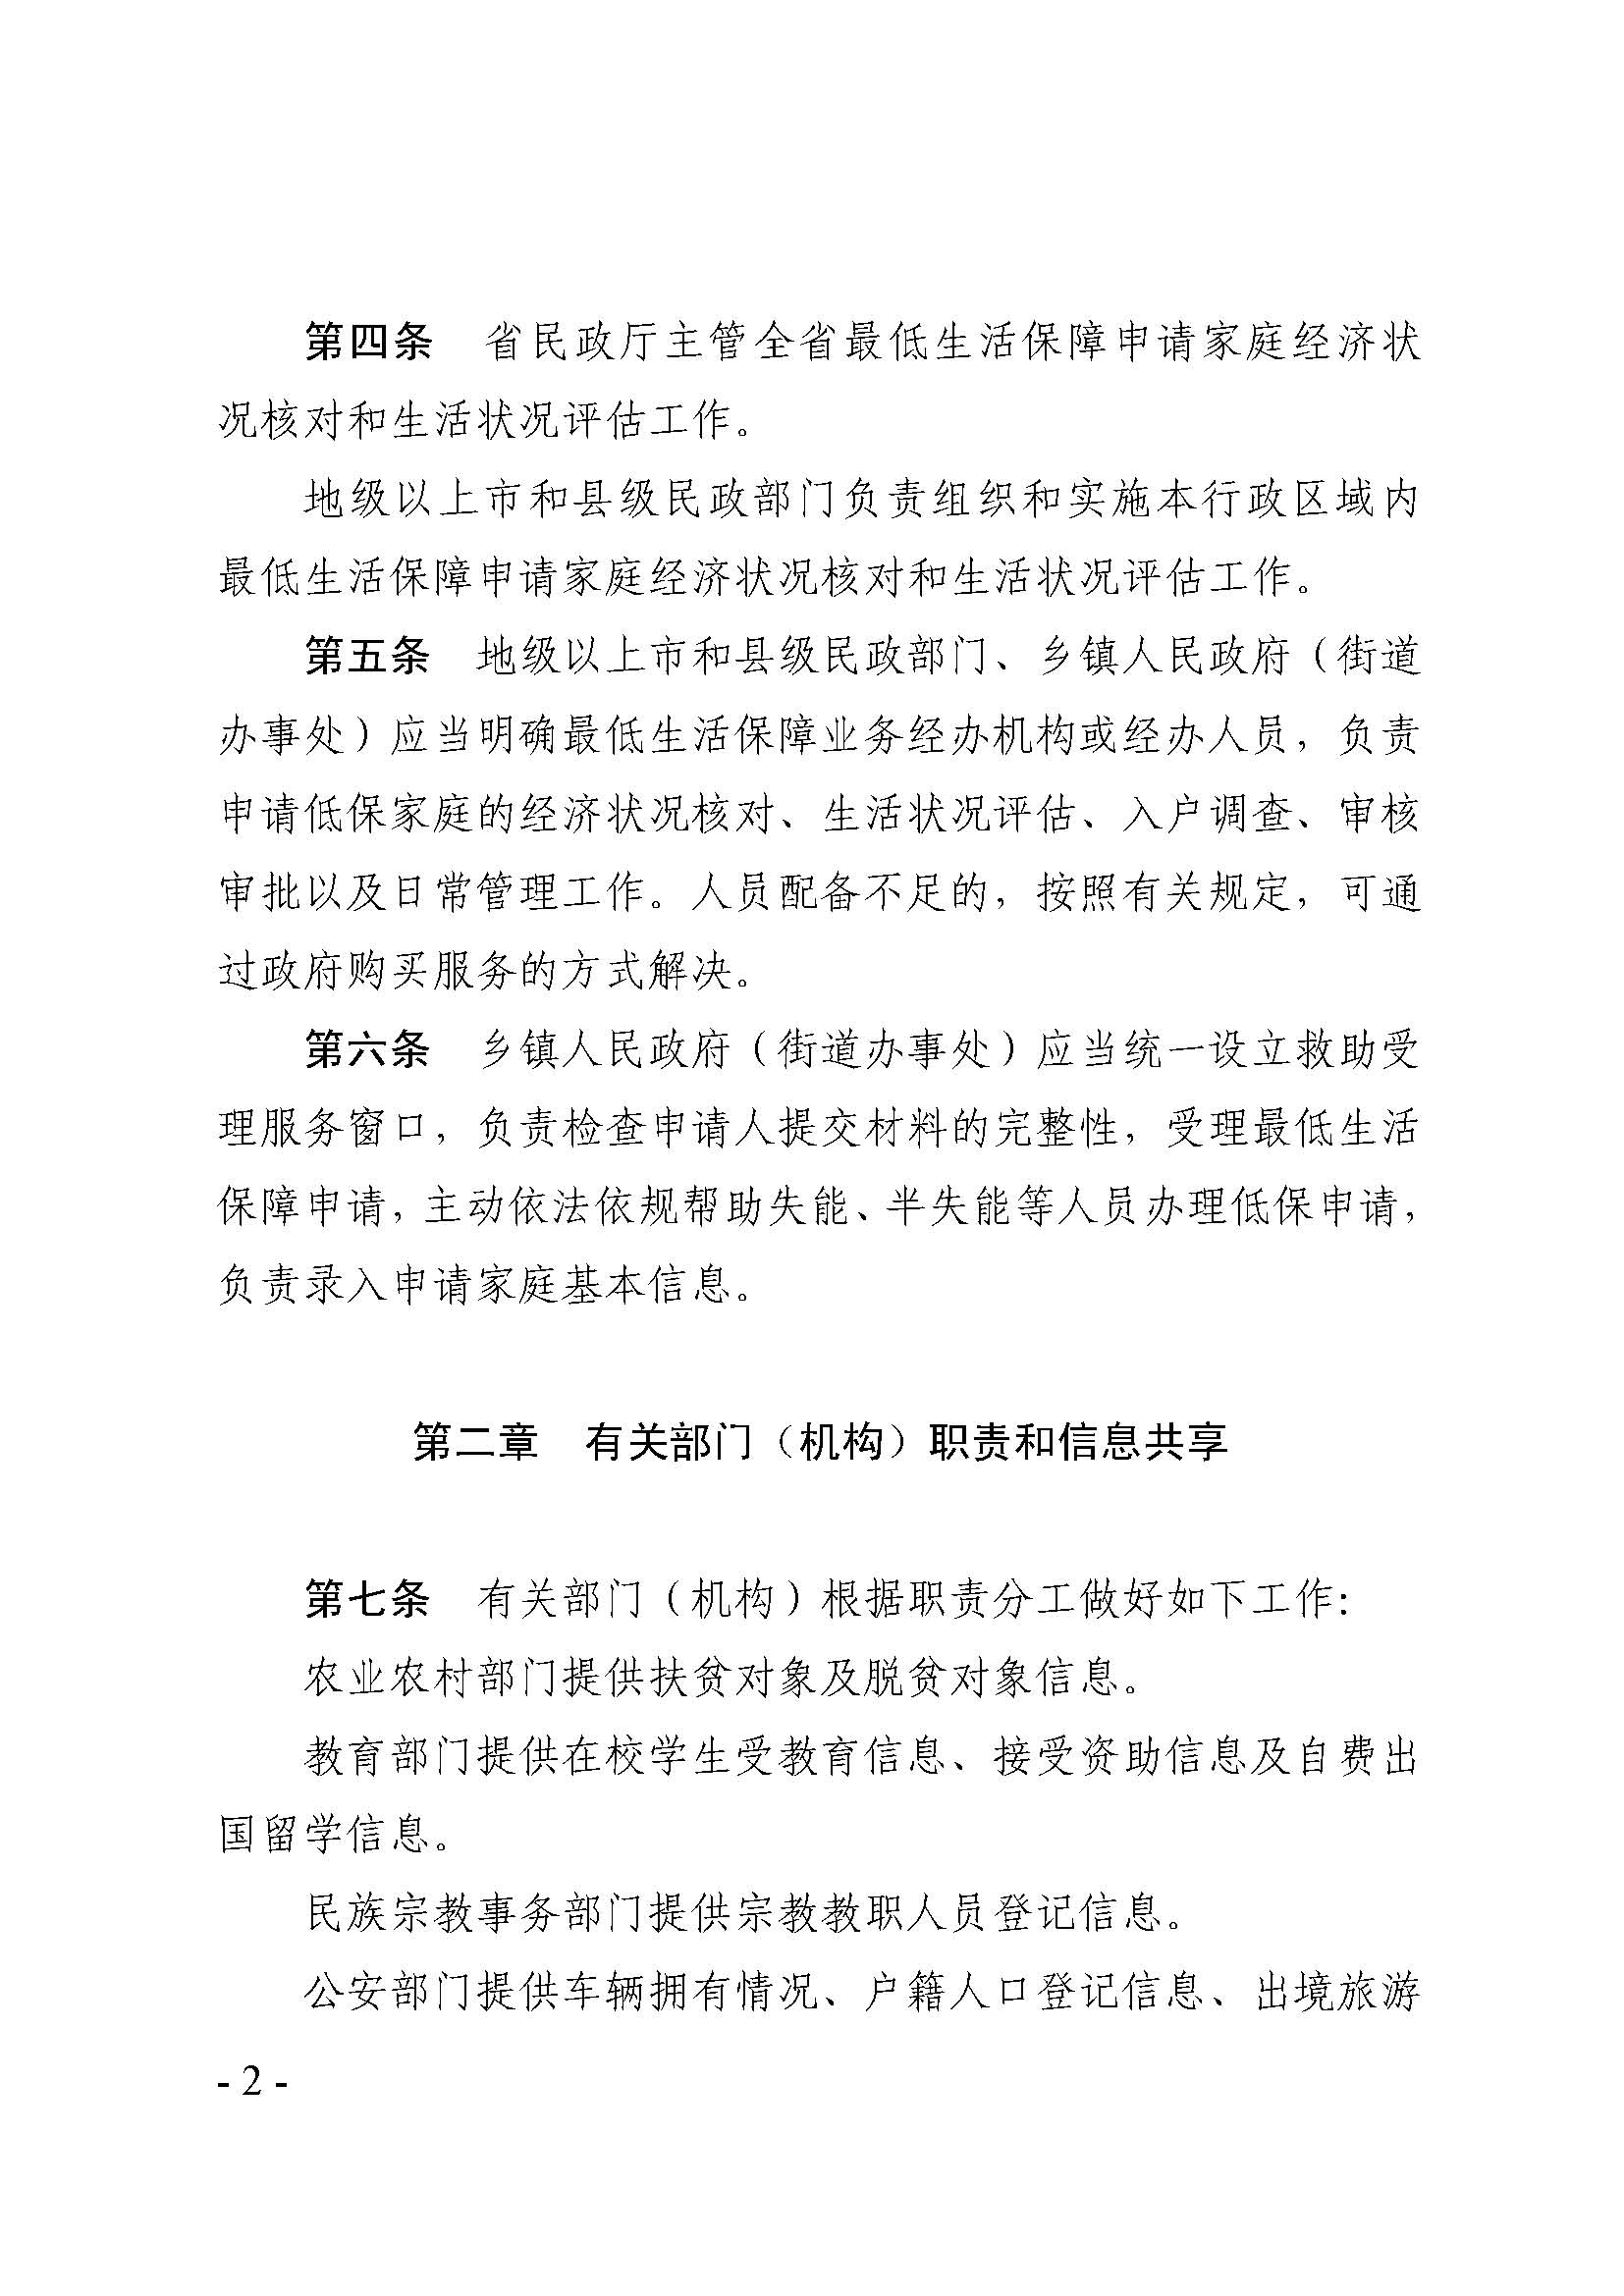 广东省最低生活保障家庭经济状况核对和生活状况评估认定办法_页面_02.jpg